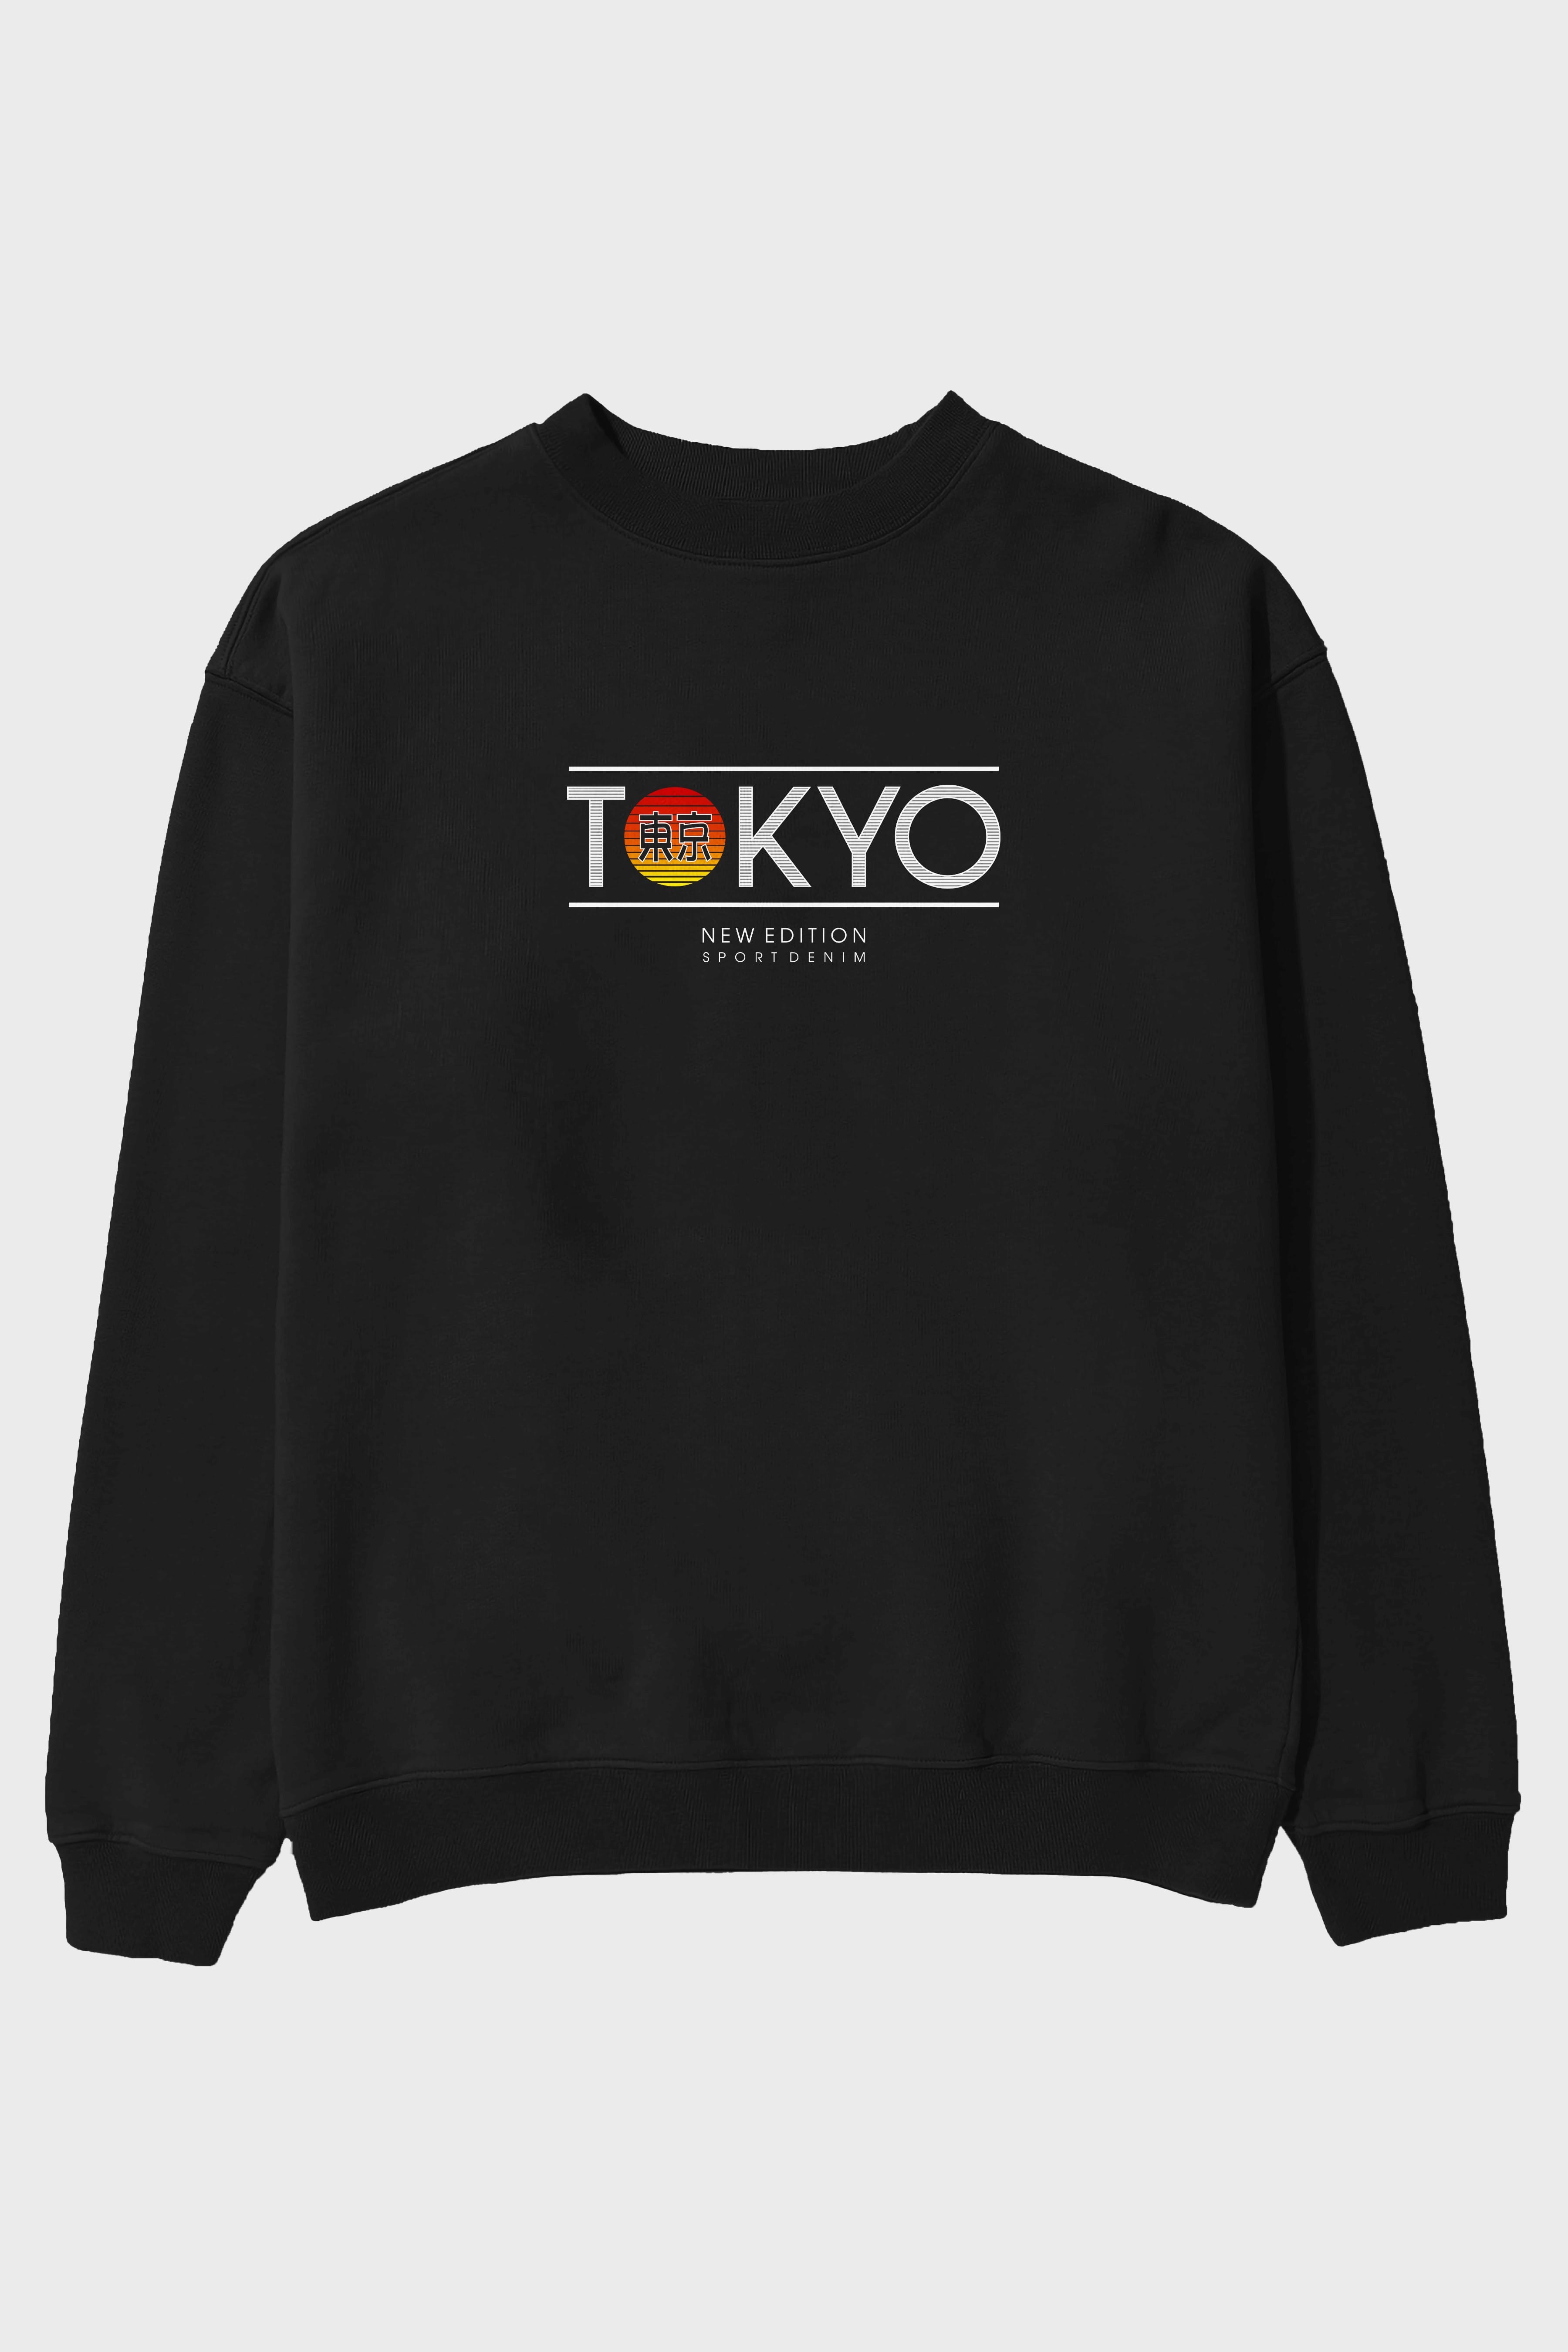 Tokyo Sport Ön Baskılı Oversize Sweatshirt Erkek Kadın Unisex